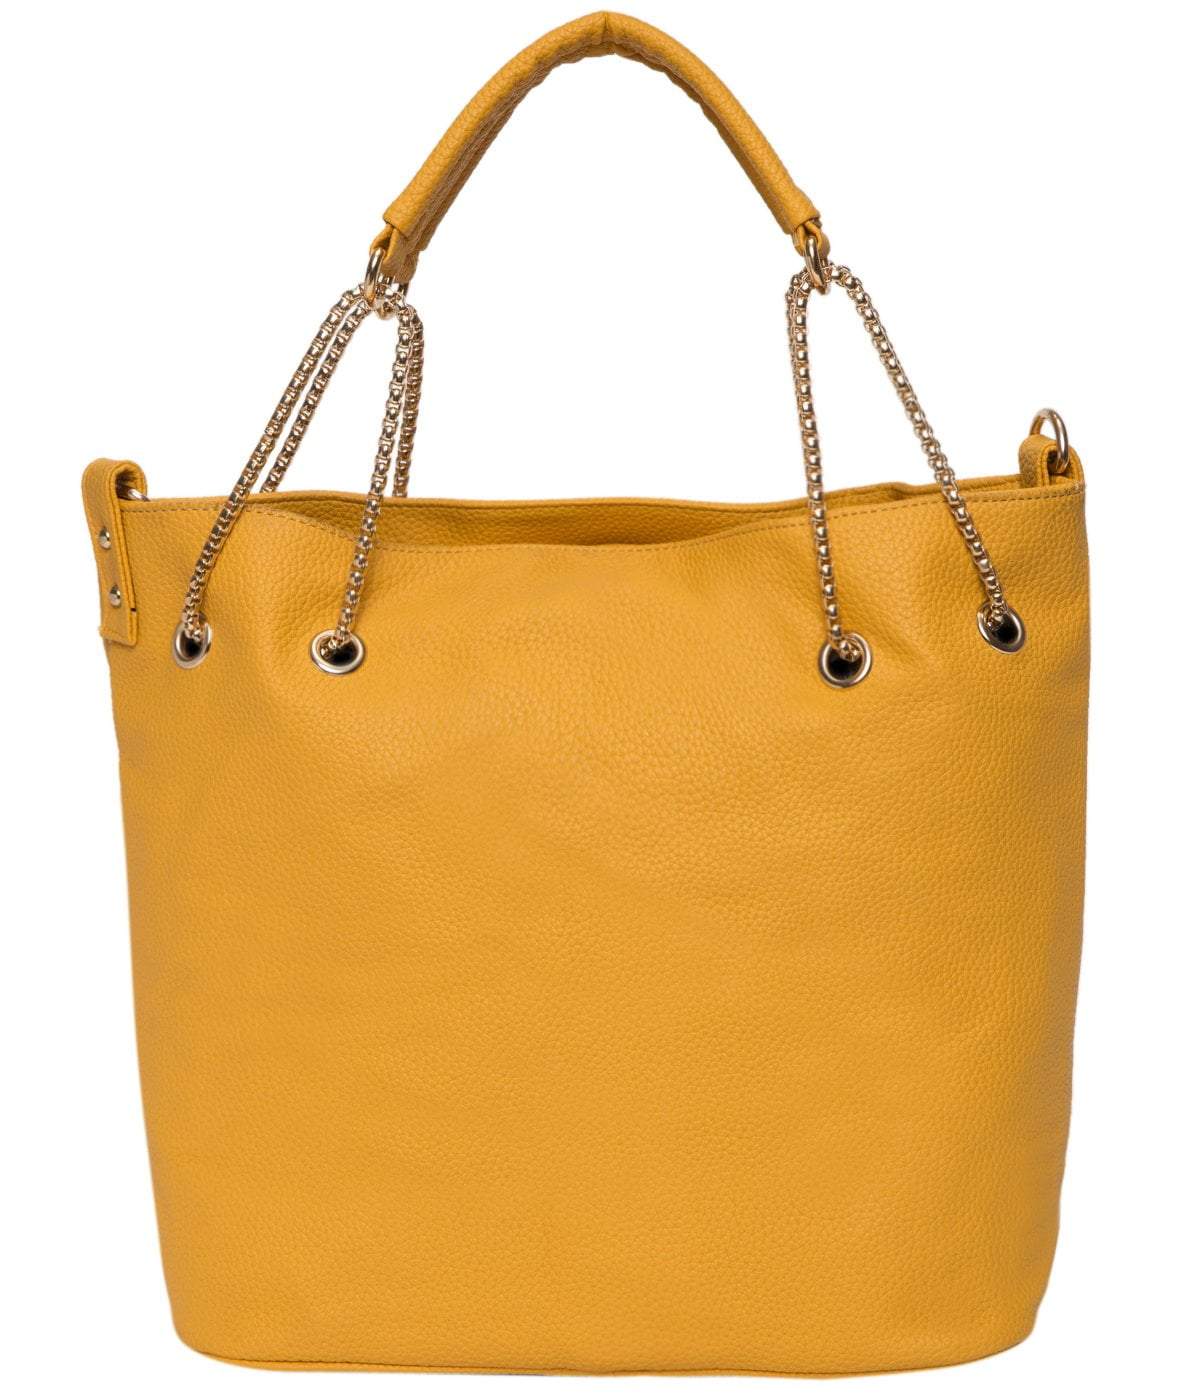 kinnoti Vegan Tote Bag Yellow Chain Tote Bag